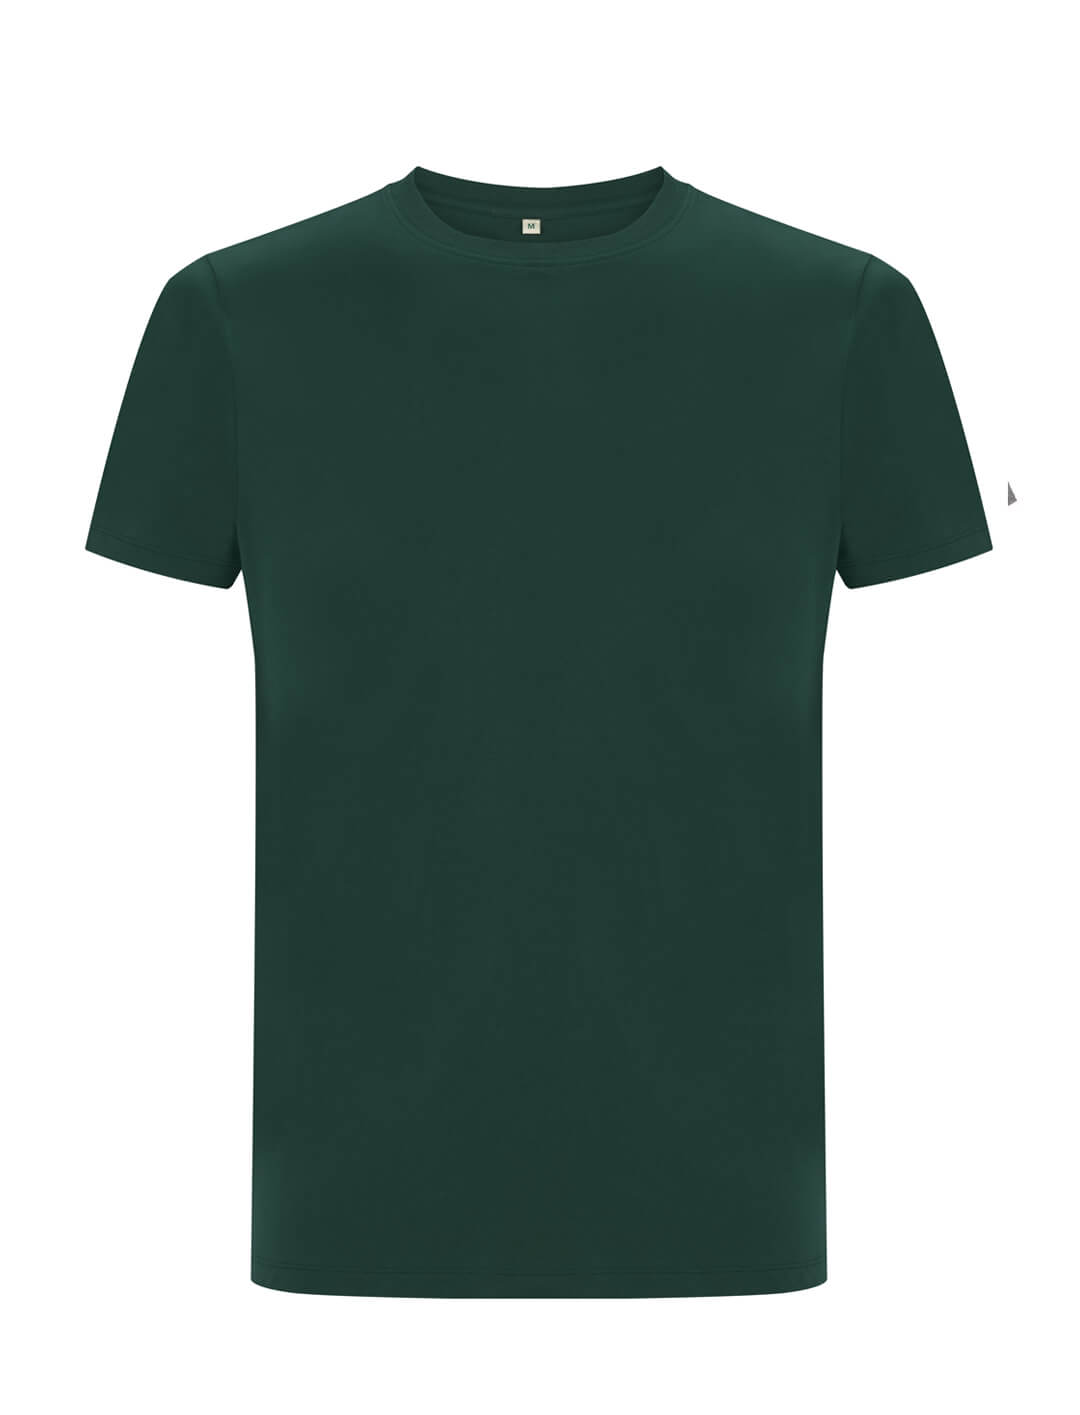 Butelkowo zielony ekologiczny t-shirt unisex z własnym nadrukiem firmowym Continental Jersey t-shirt EP18